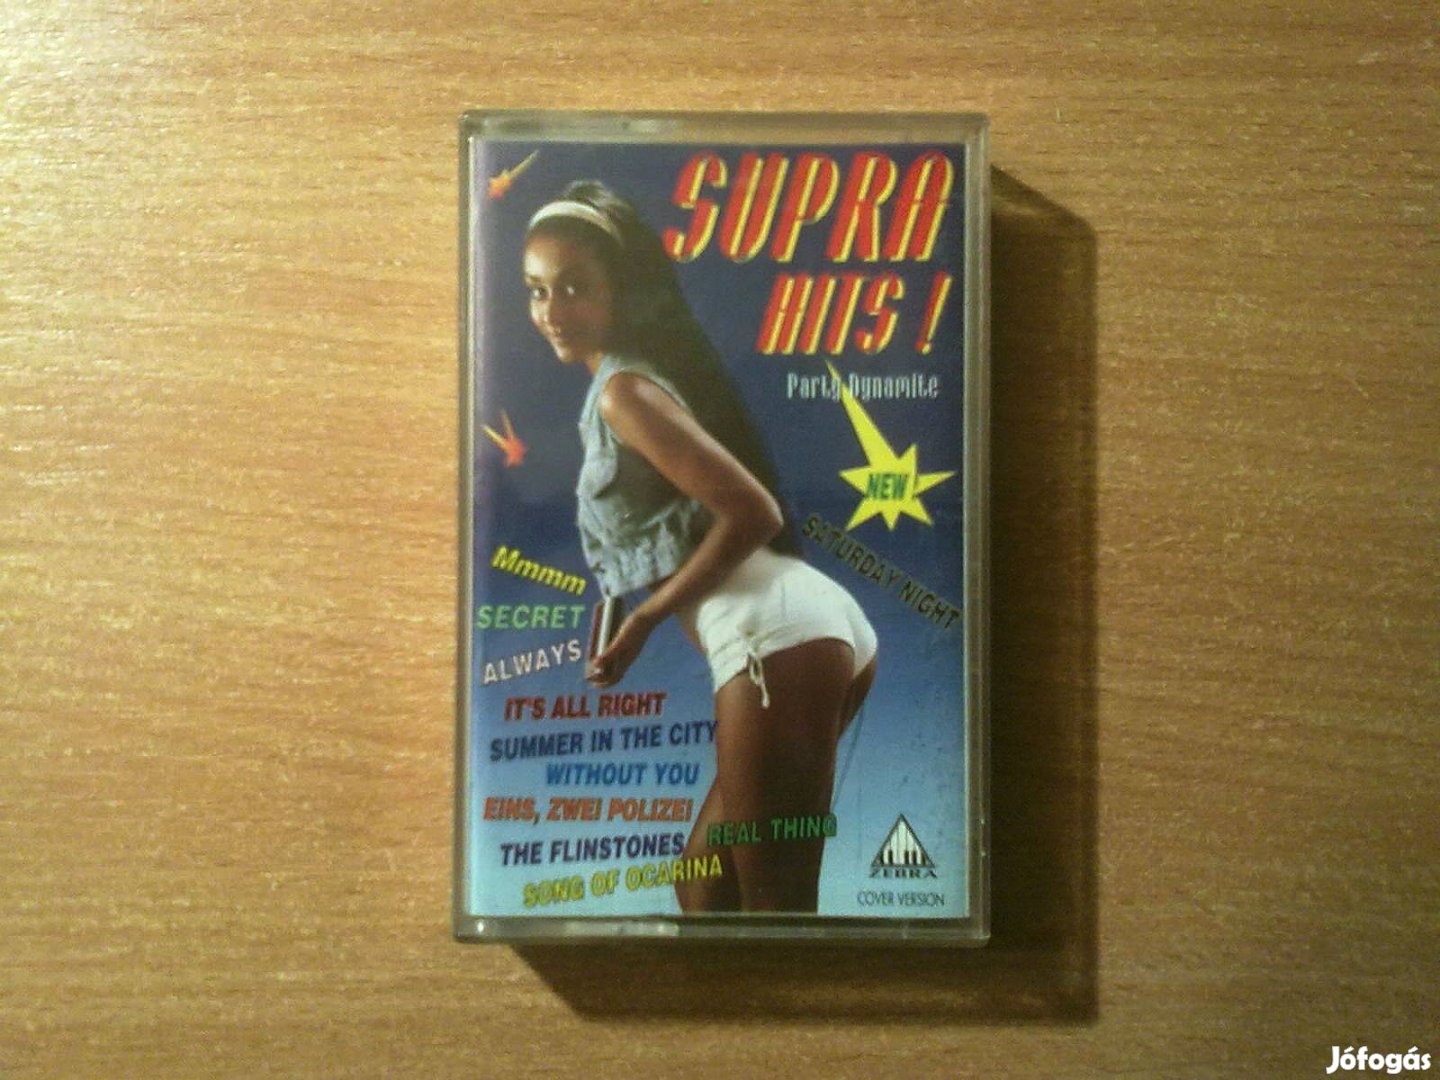 Supra Hits! (Party Dynamite)